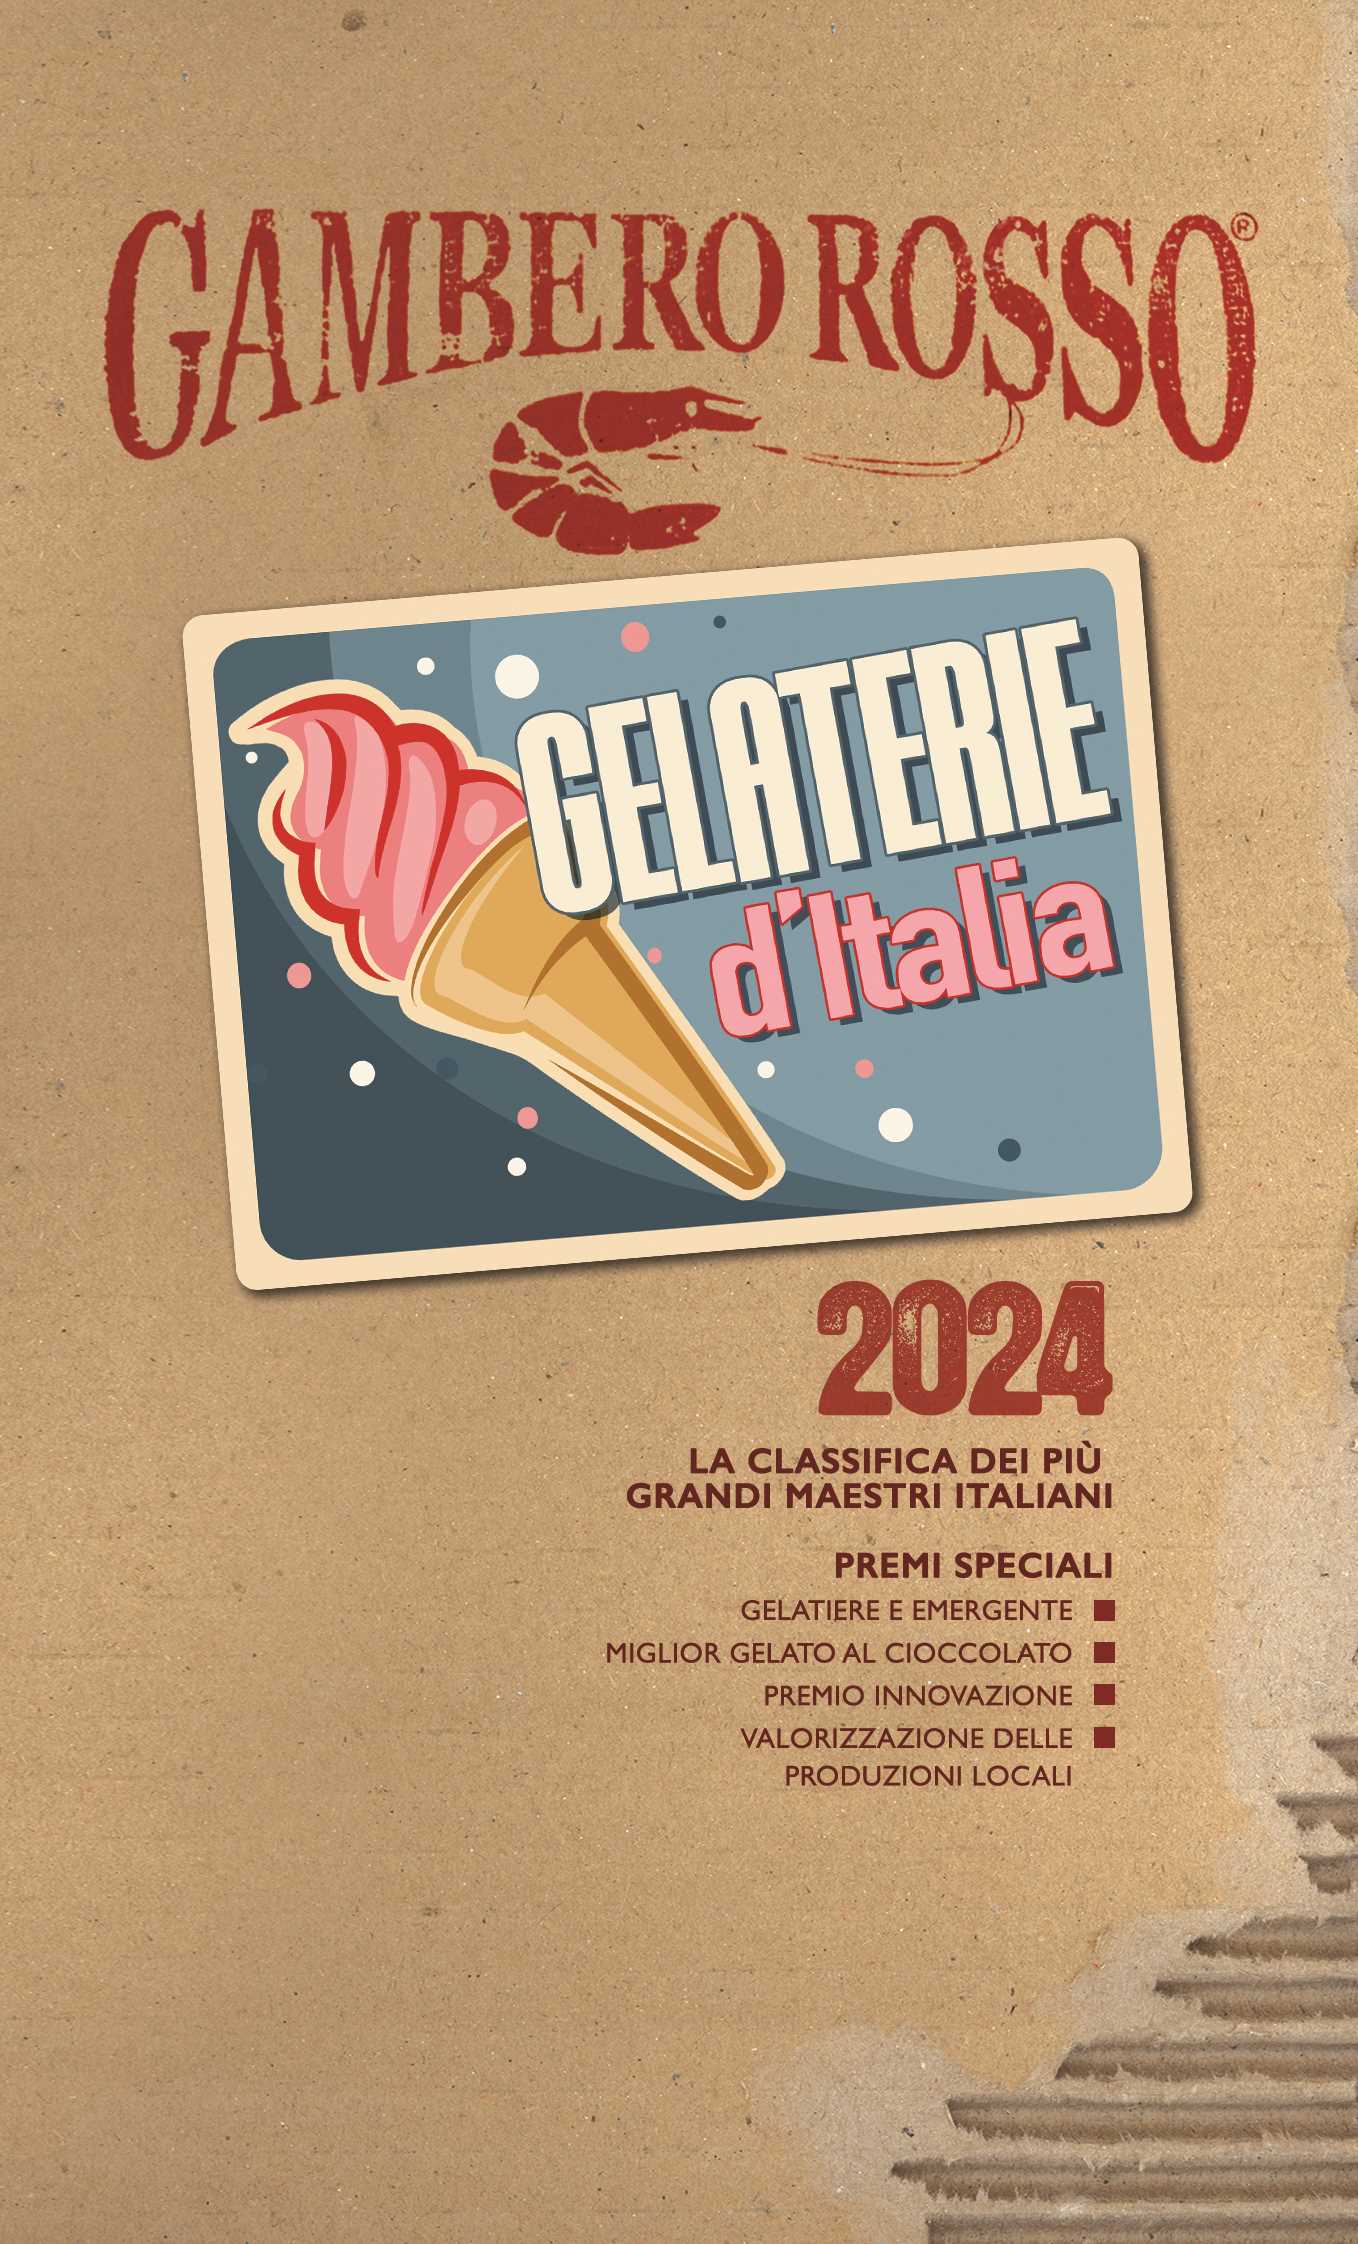 gelaterie d'italia 2024 gambero rosso